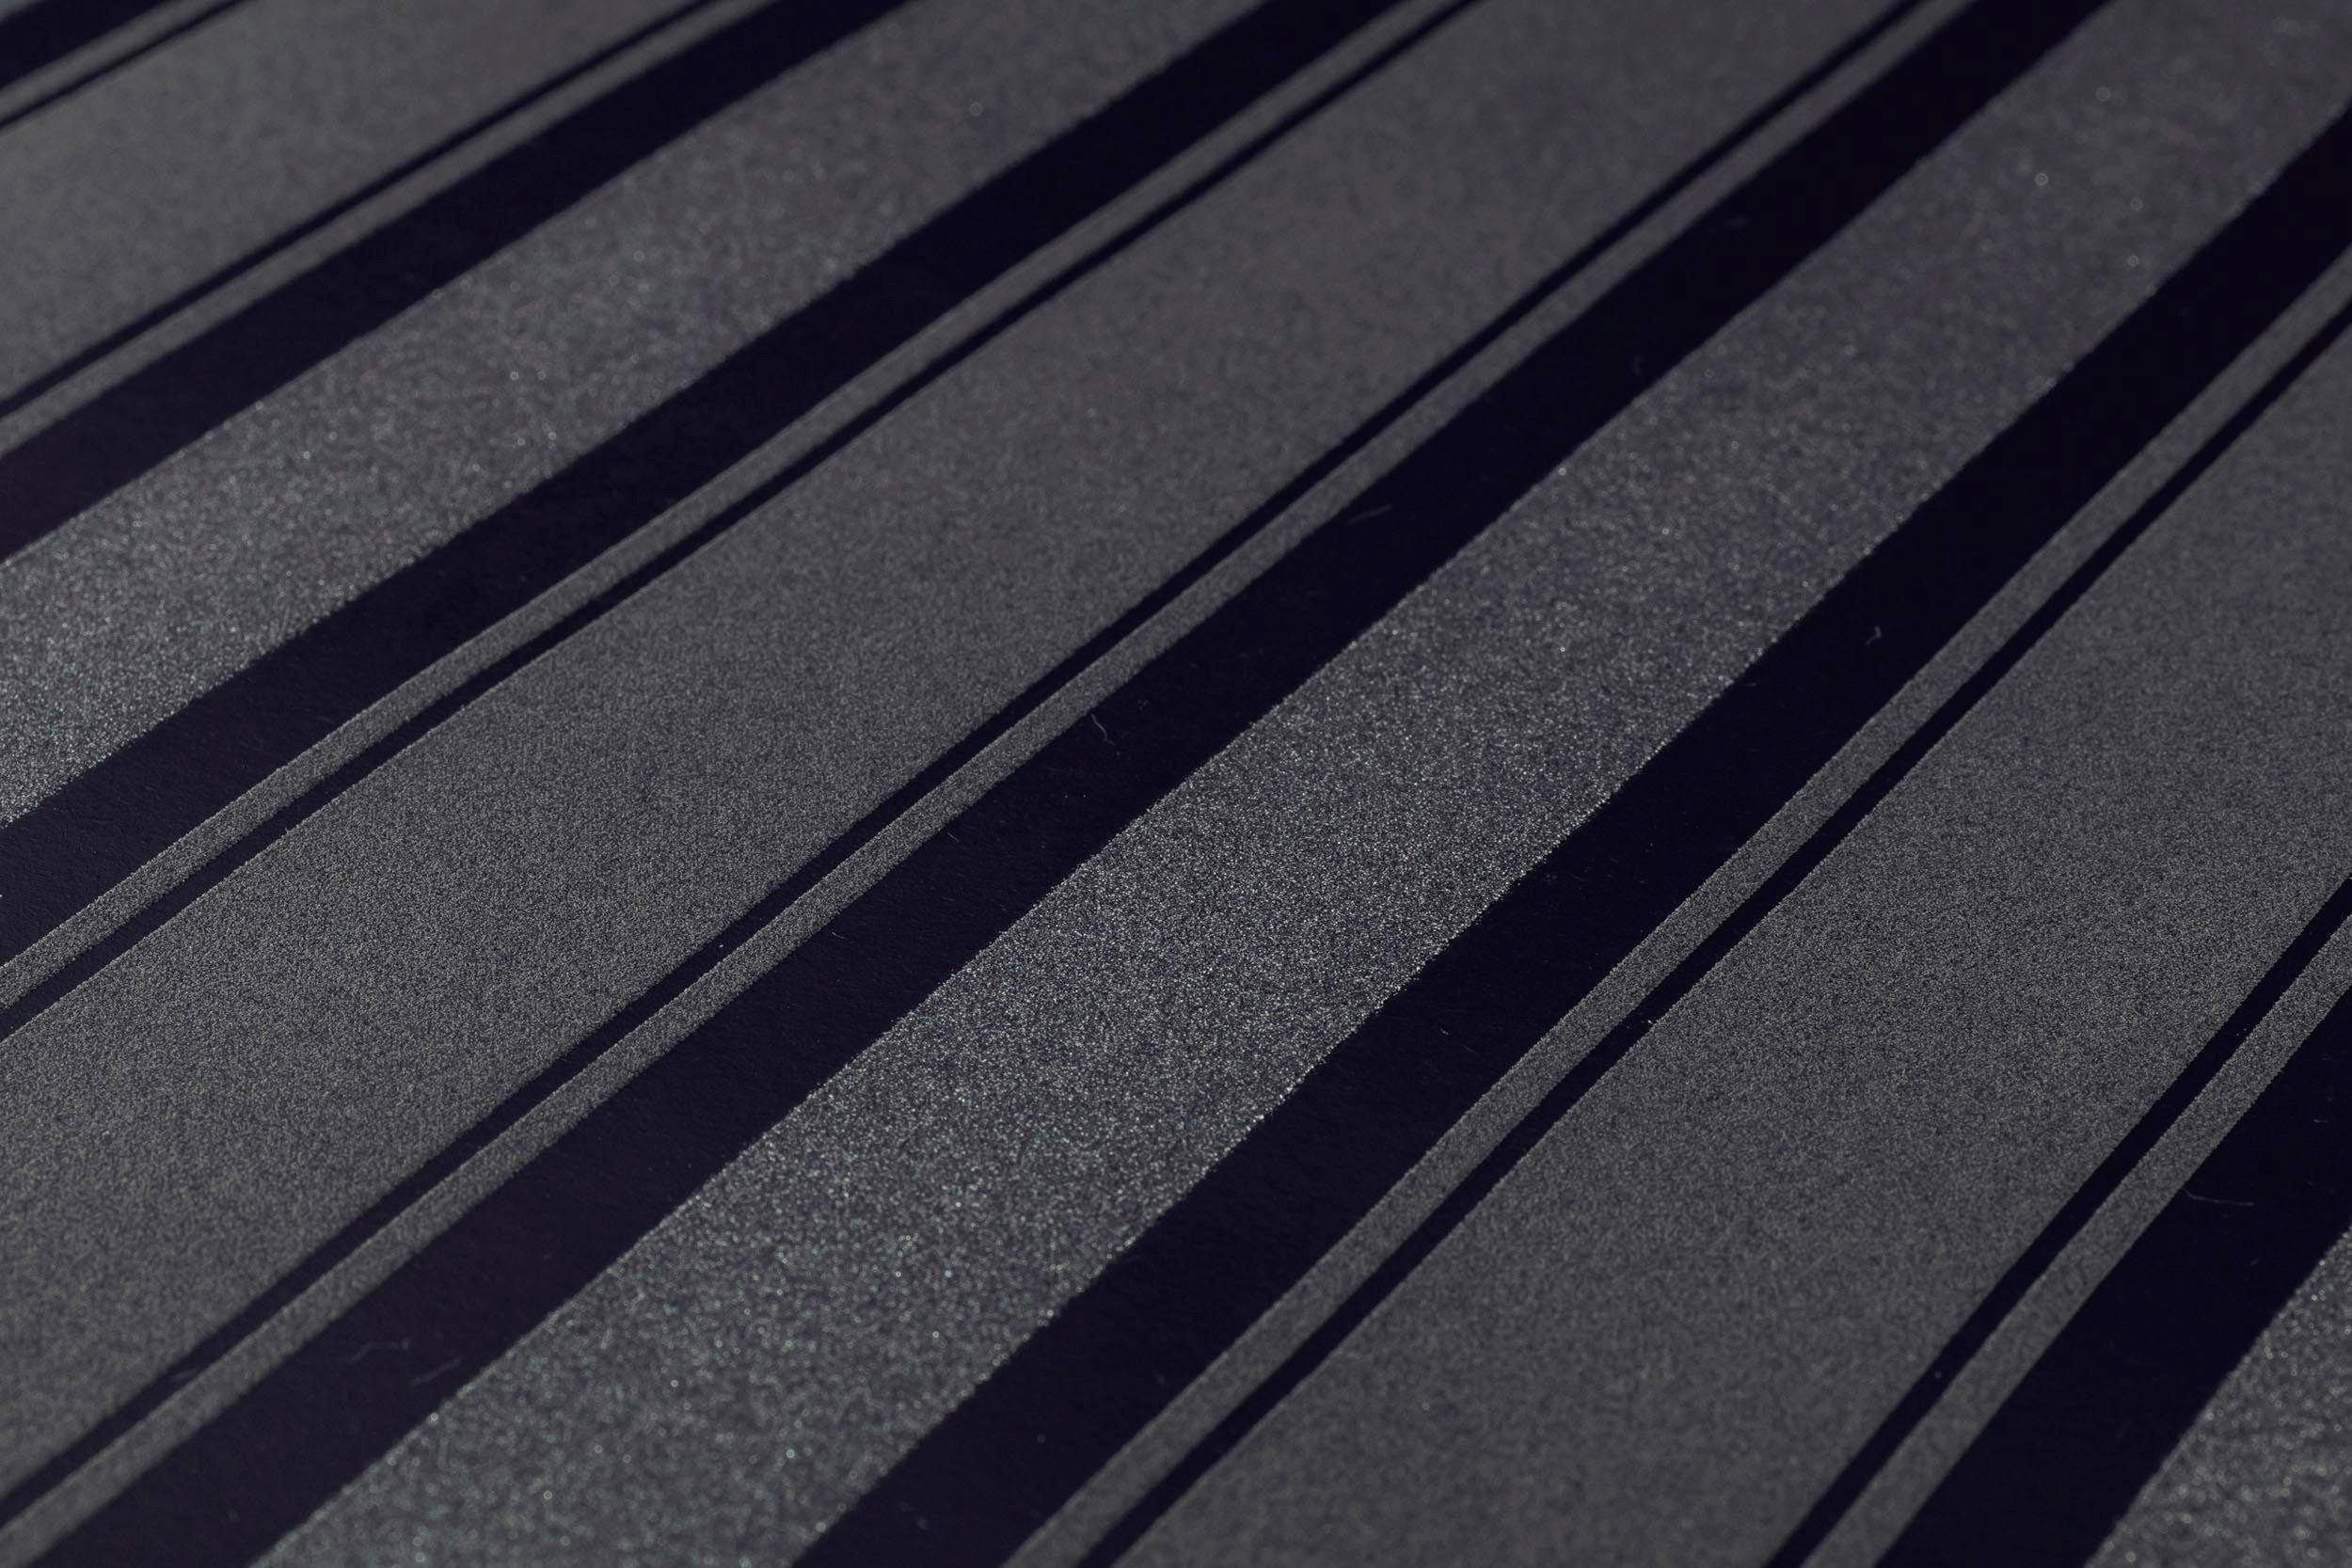 Neue schwarz/silberfarben Vliestapete Glitzereffekt, St), A.S. glänzend, 2.0 living walls Tapete matt, Création (1 Bude Glitzerstreifen, strukturiert, Streifen mit metallic, gestreift,